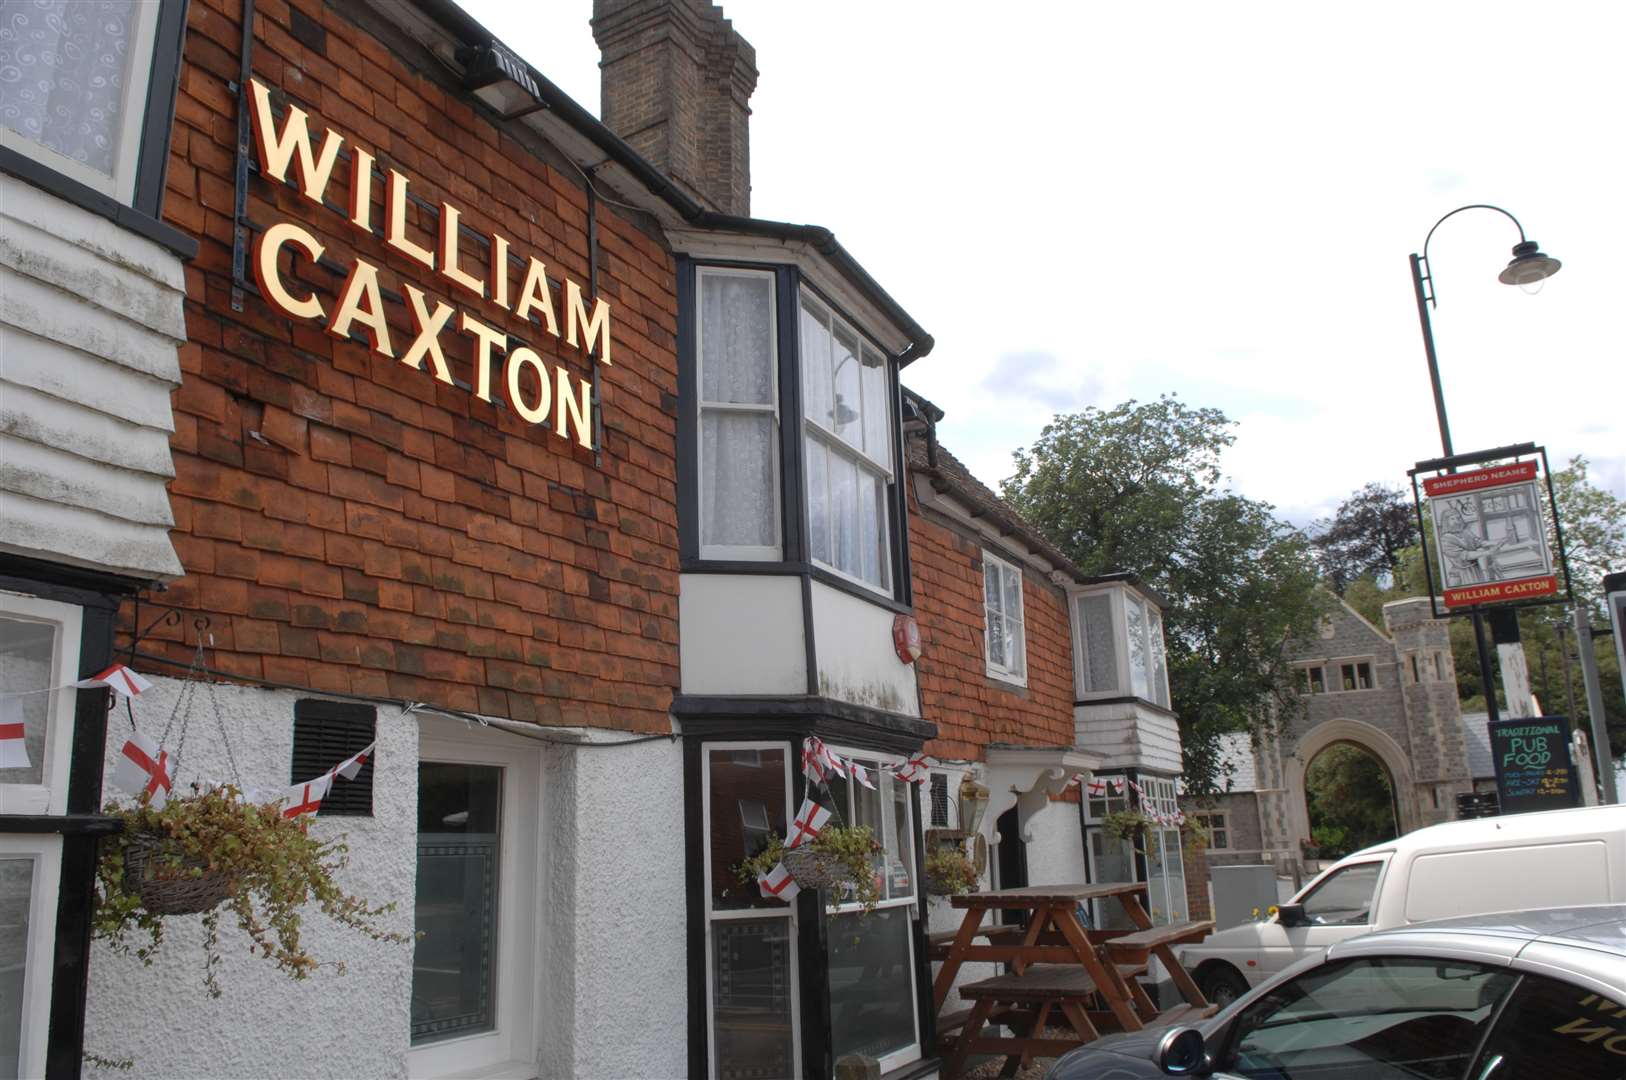 The William Caxton pub in Tenterden